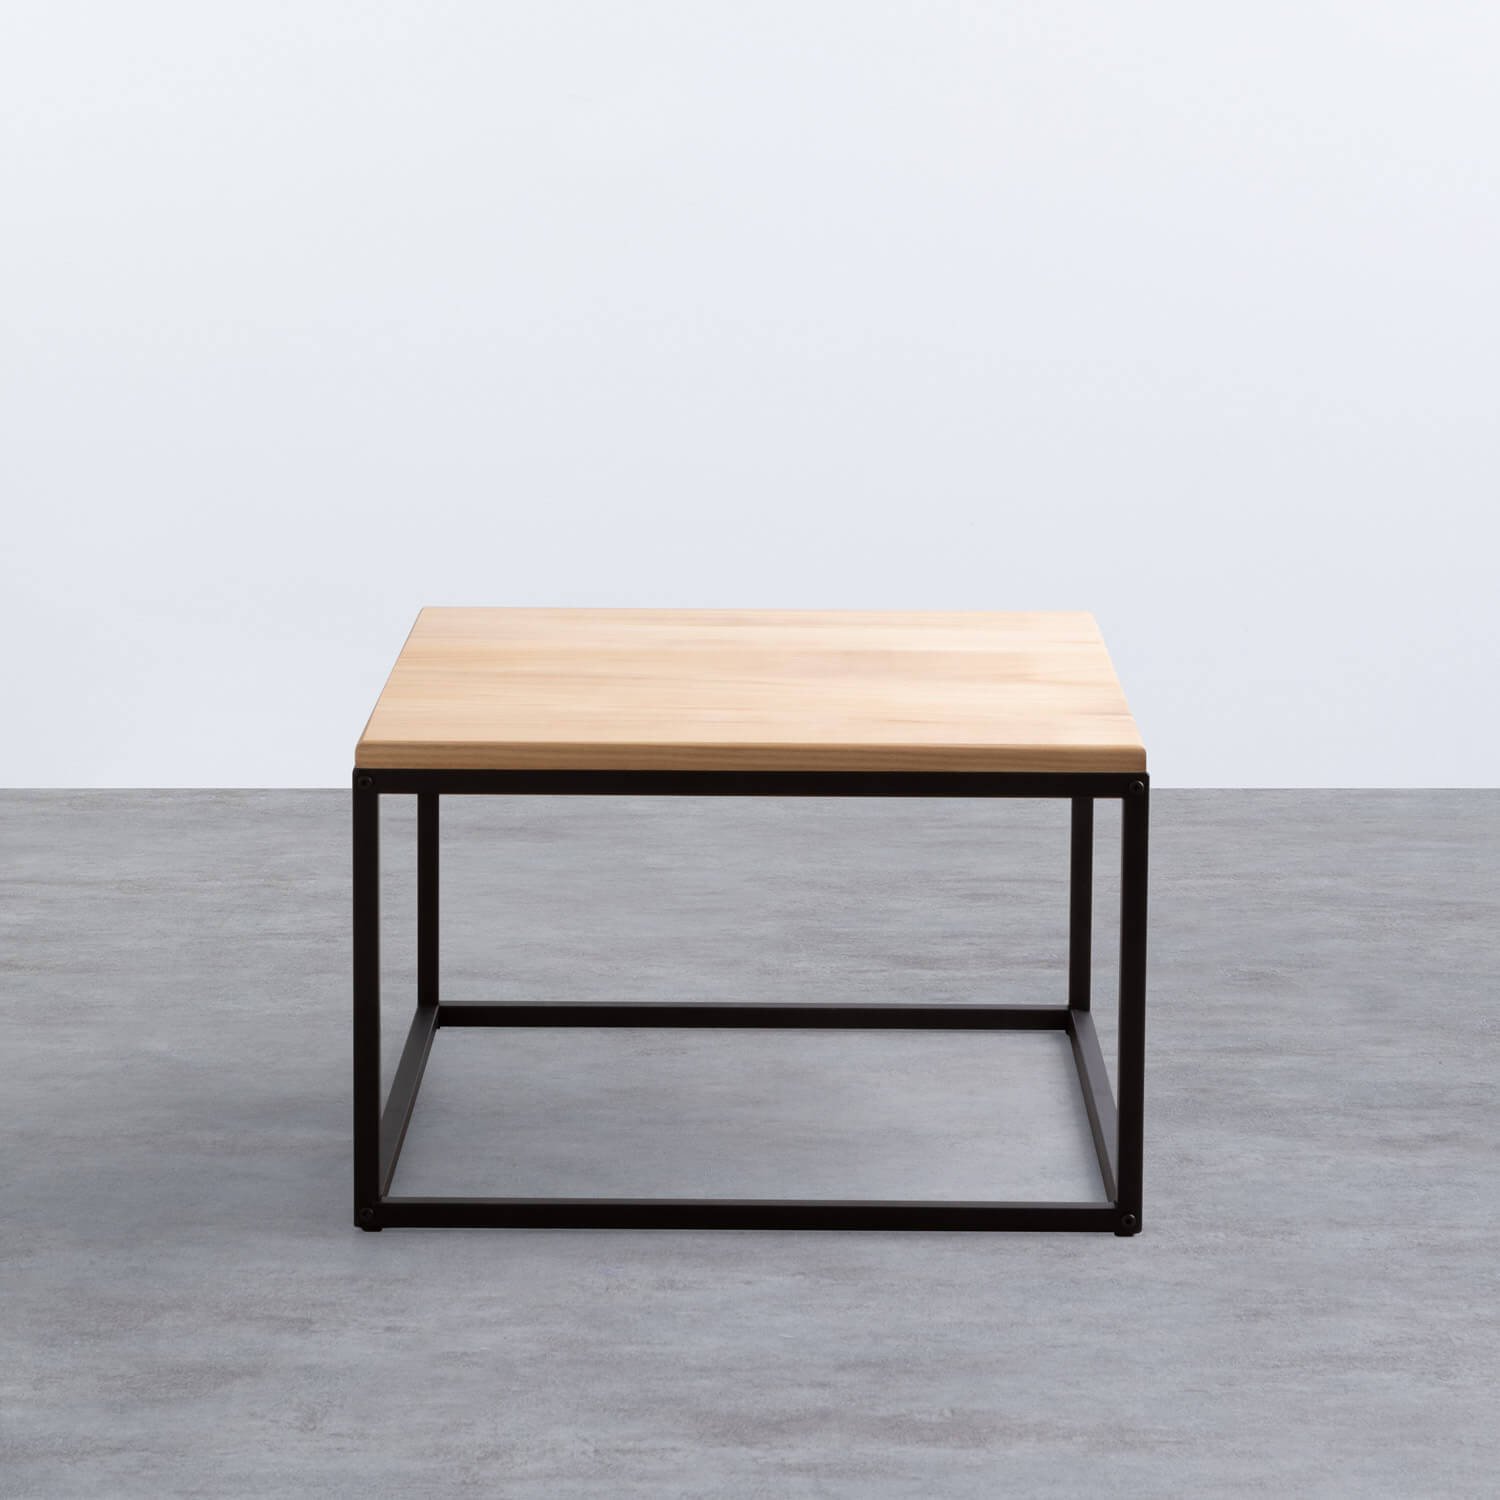 Tavolino da Caffé Quadrato in Legno e Metallo (60x60 cm) Ferro, immagine della galleria 2